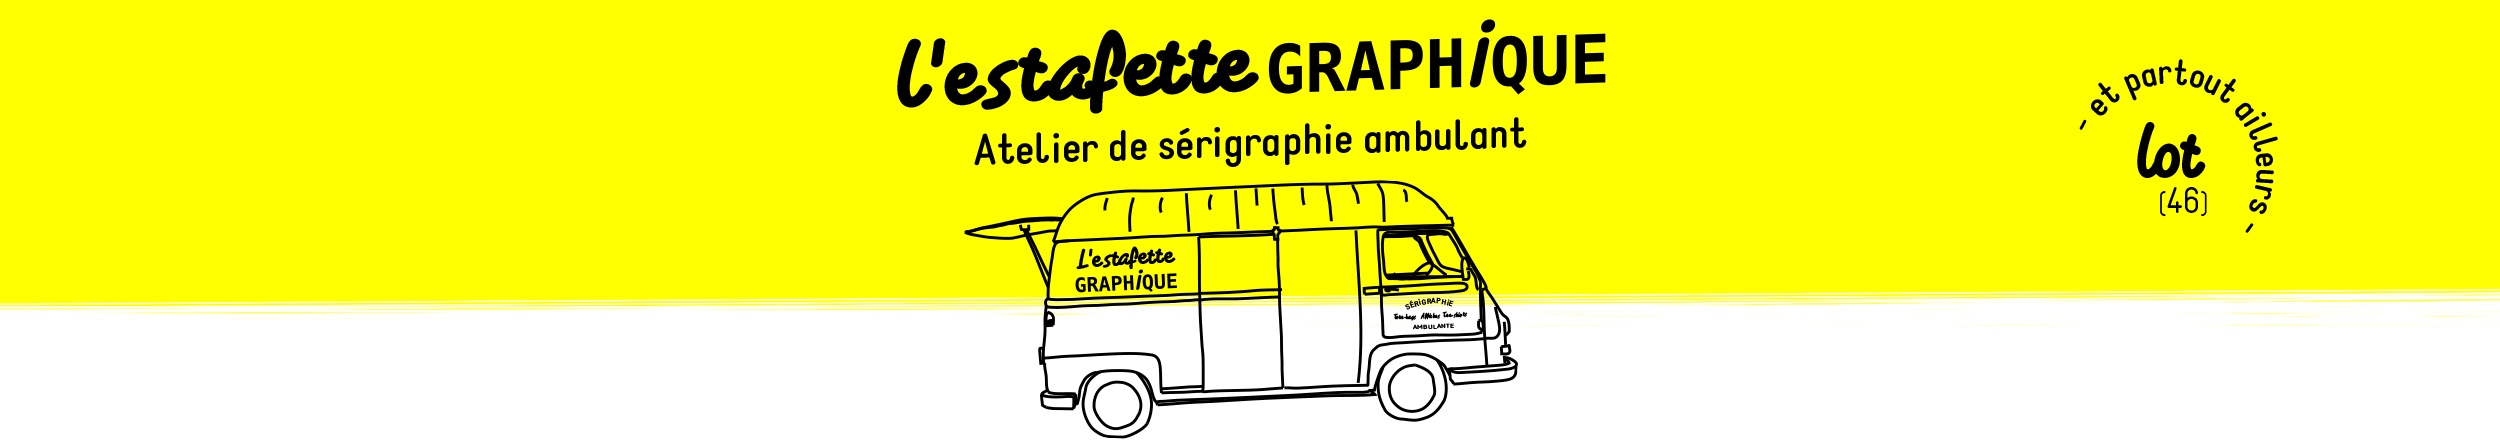 l'estafette graphique, un atelier de sérigraphie itinérant dans le lot et en France